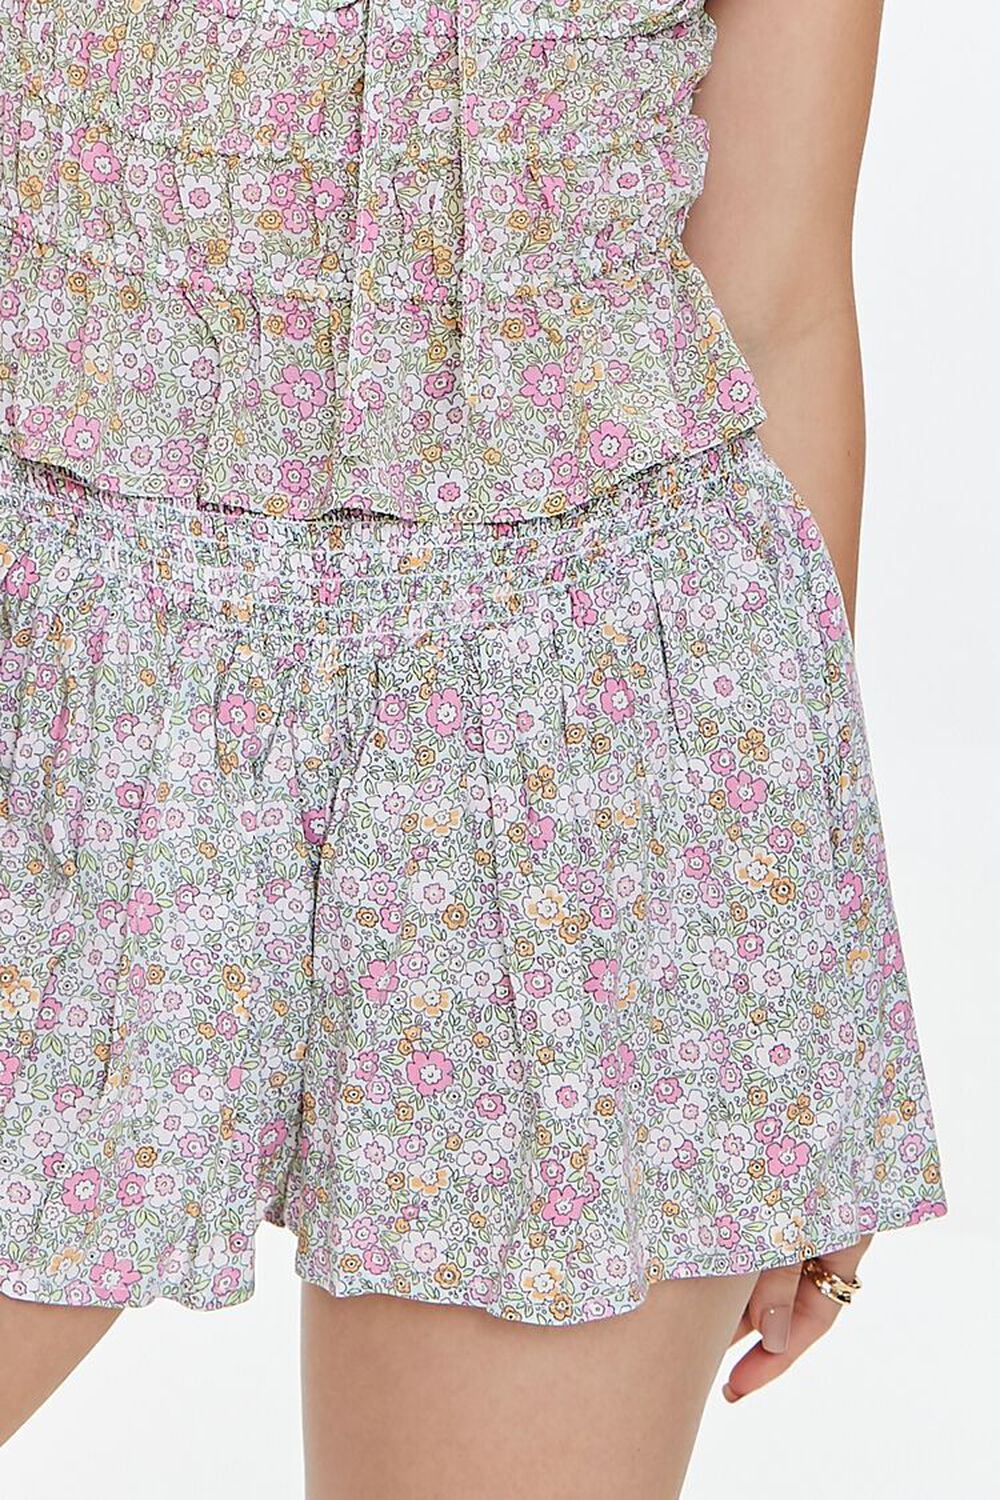 Smocked Floral Print Shorts | Forever 21 (US)